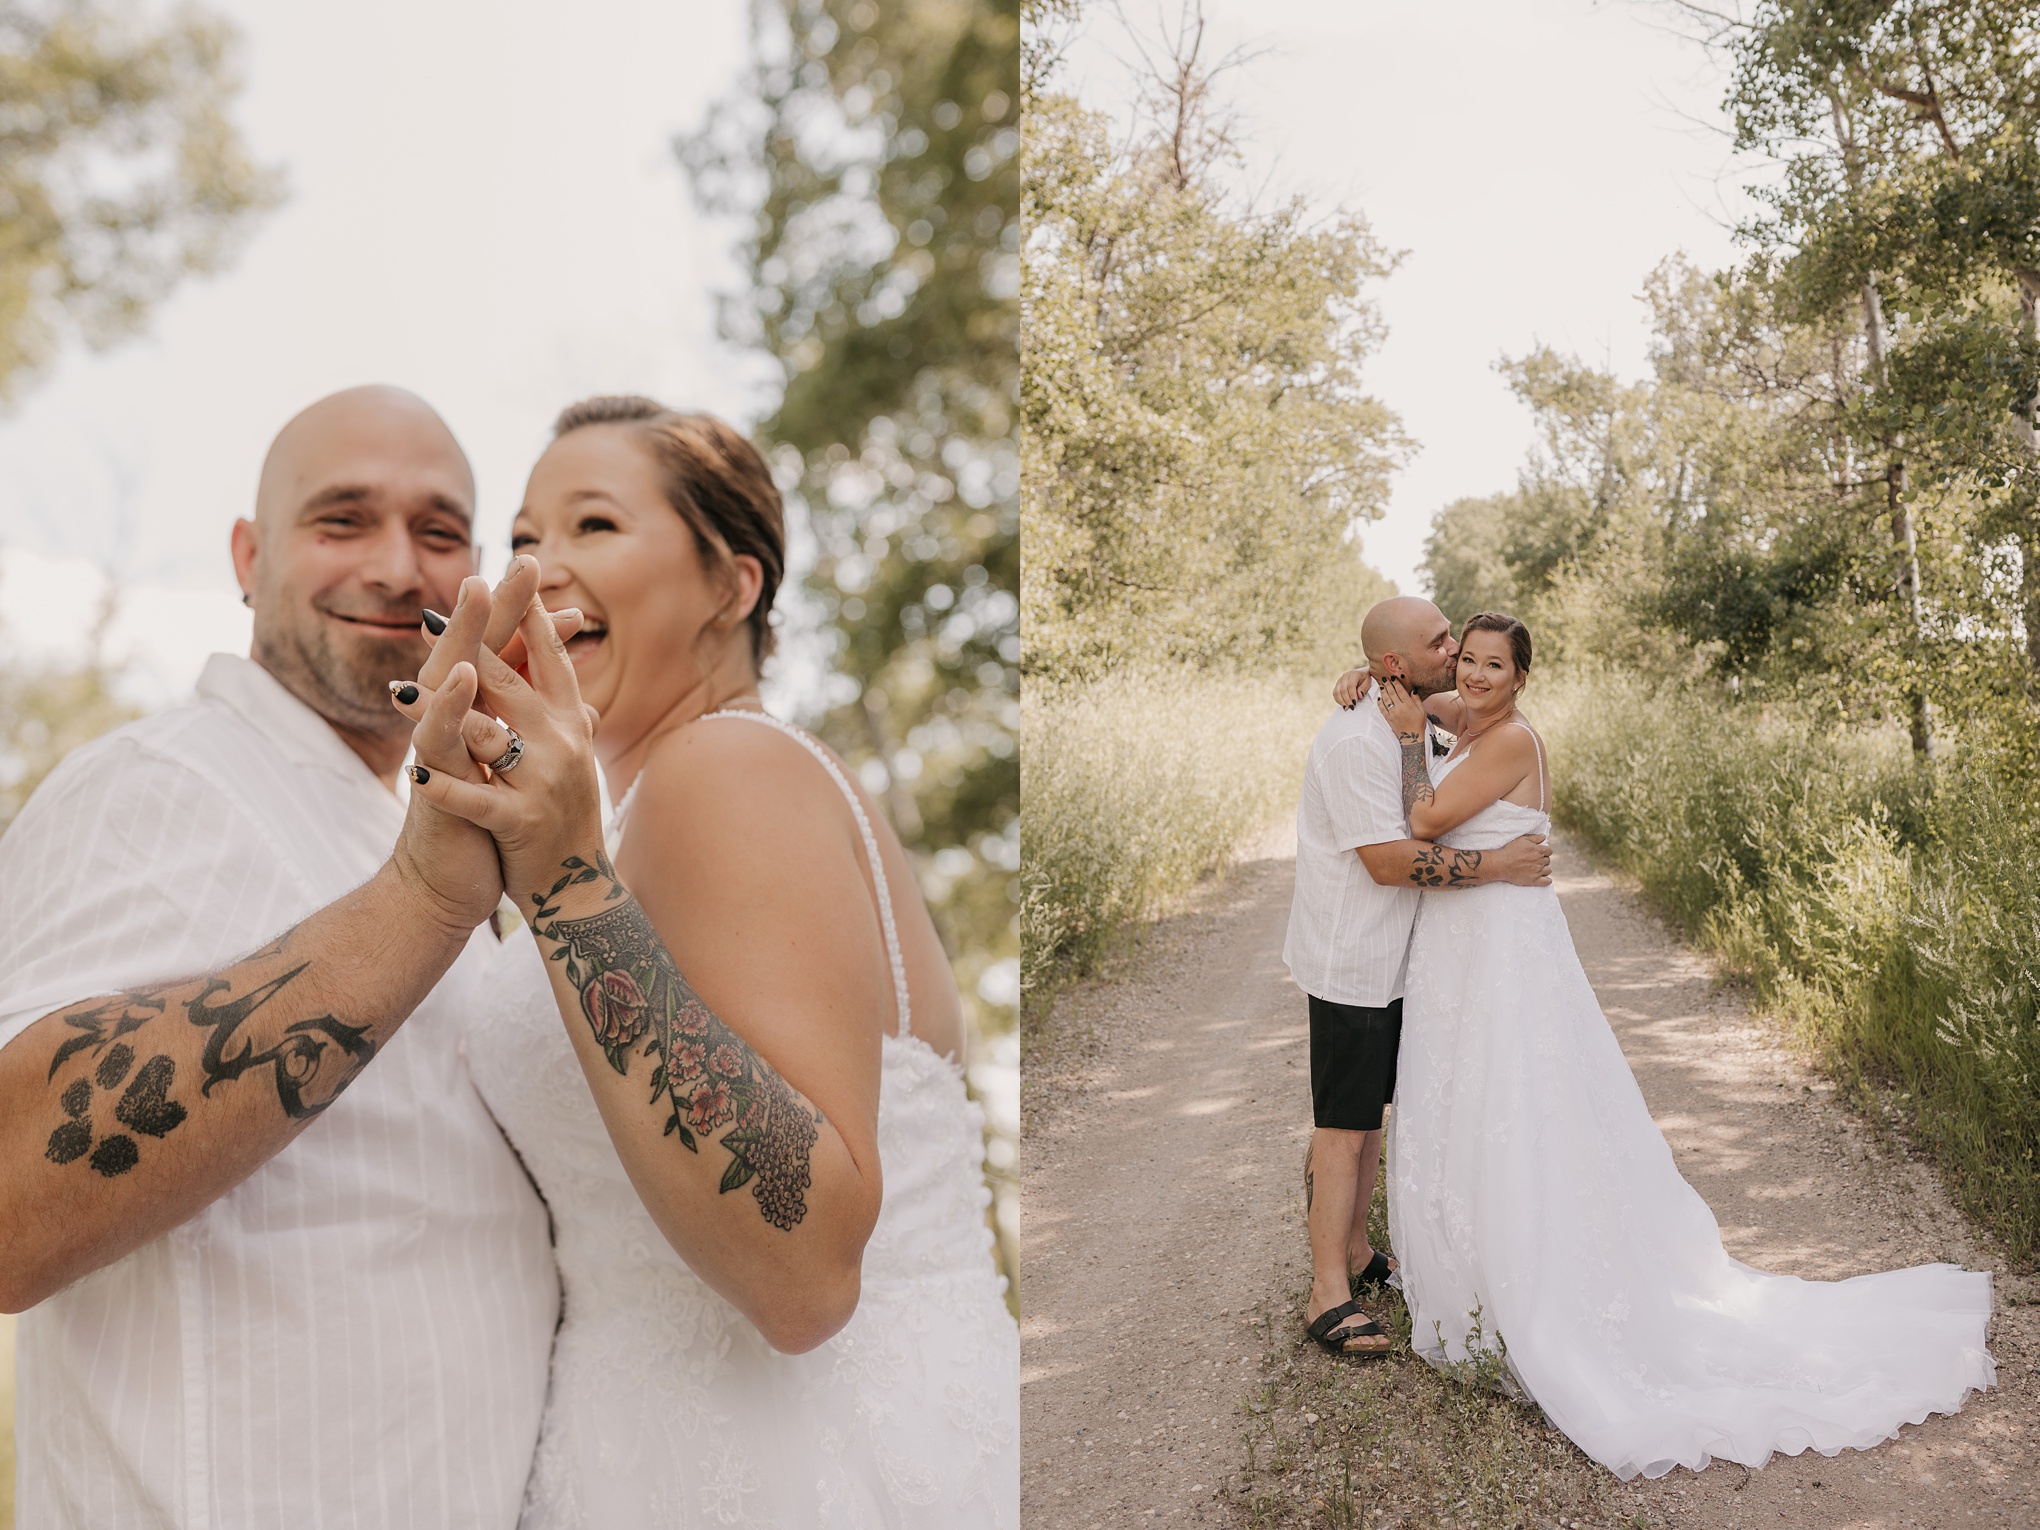 Make Your Saskatchewan Summer Wedding Unforgettable